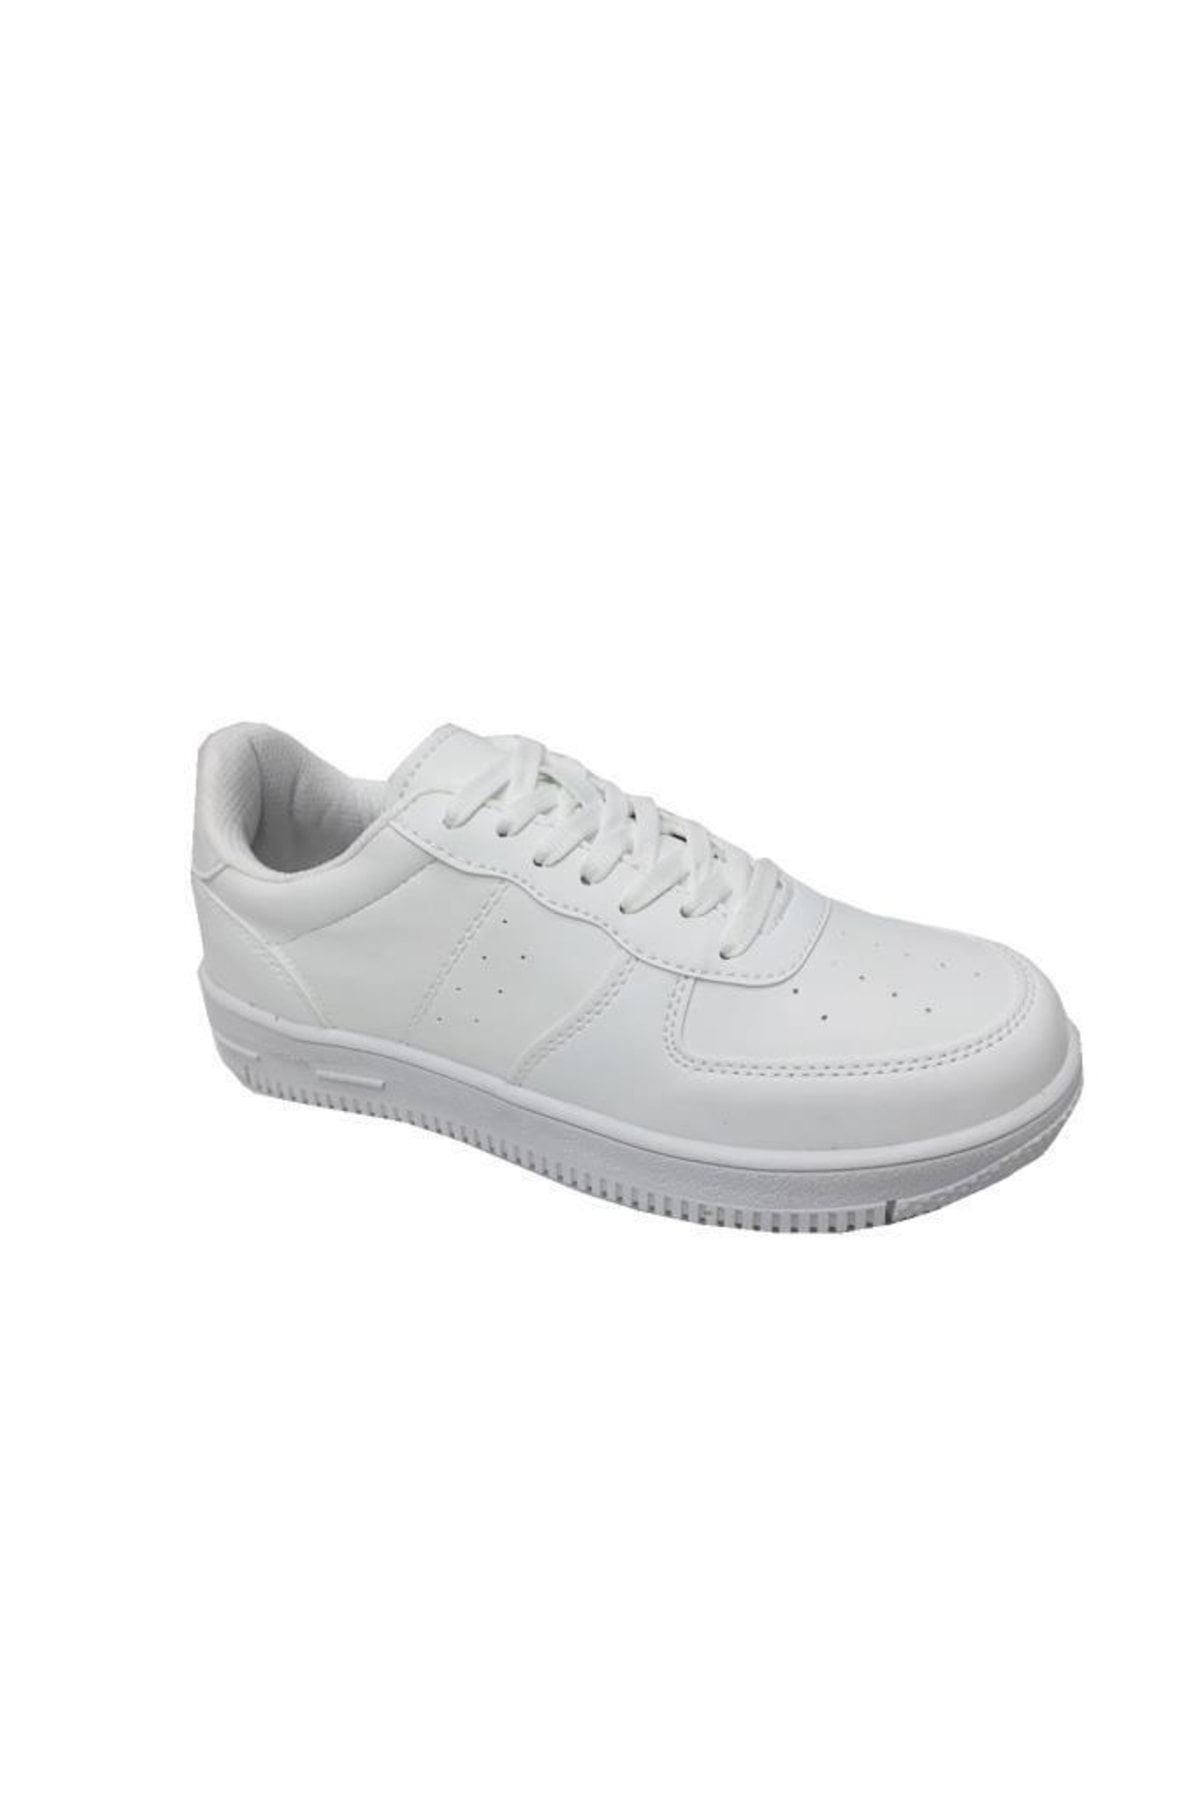 Zigana Beyaz - 002 Deri Erkek Sneakers Ayakkabı